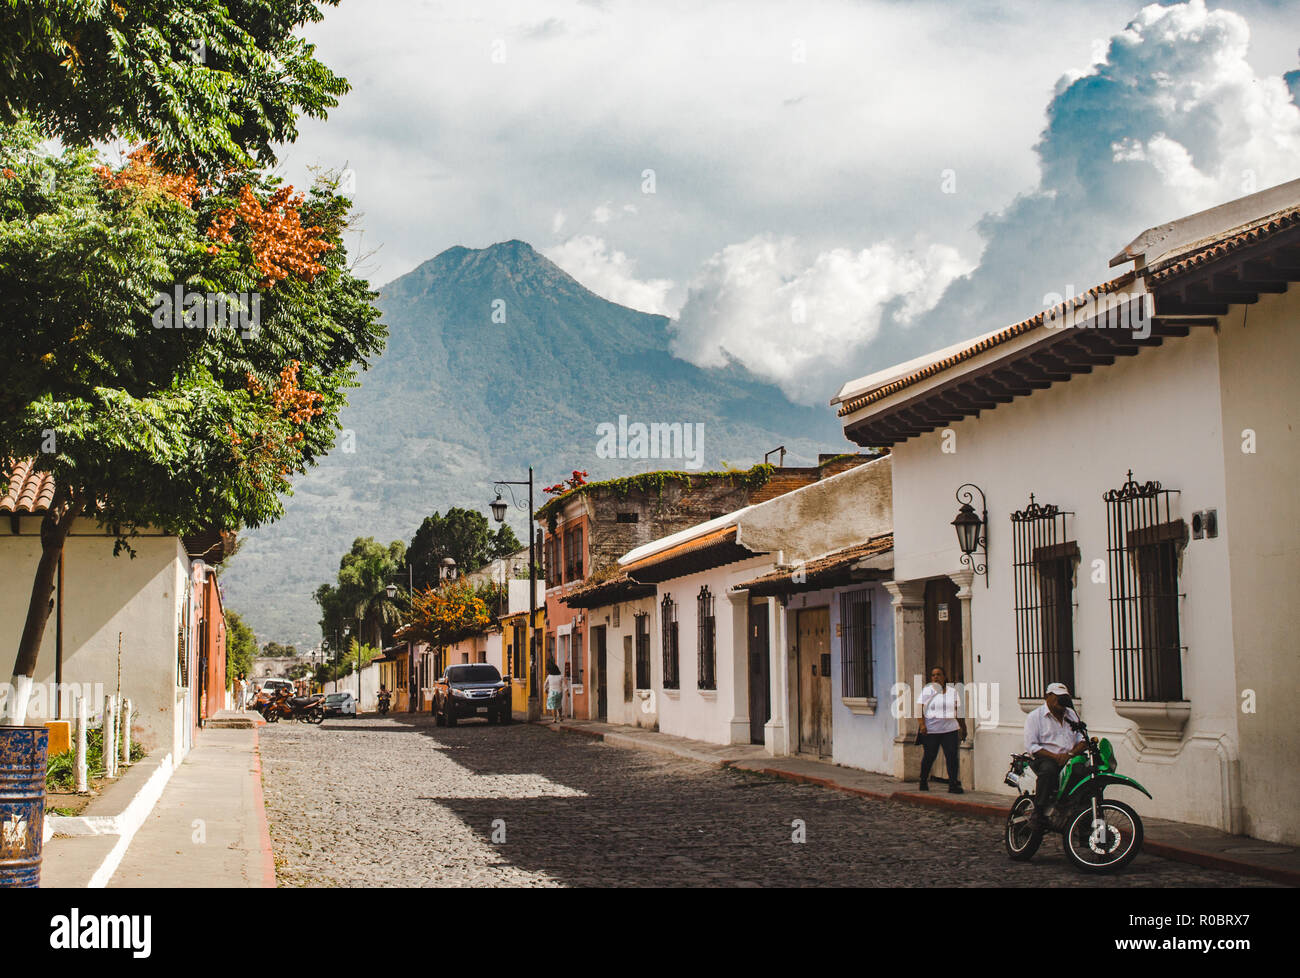 Rue pavée typique dans Antigua Guatemala au cours d'une journée ensoleillée - Volcan volcan Agua qui pèse sur maisons de style colonial Banque D'Images